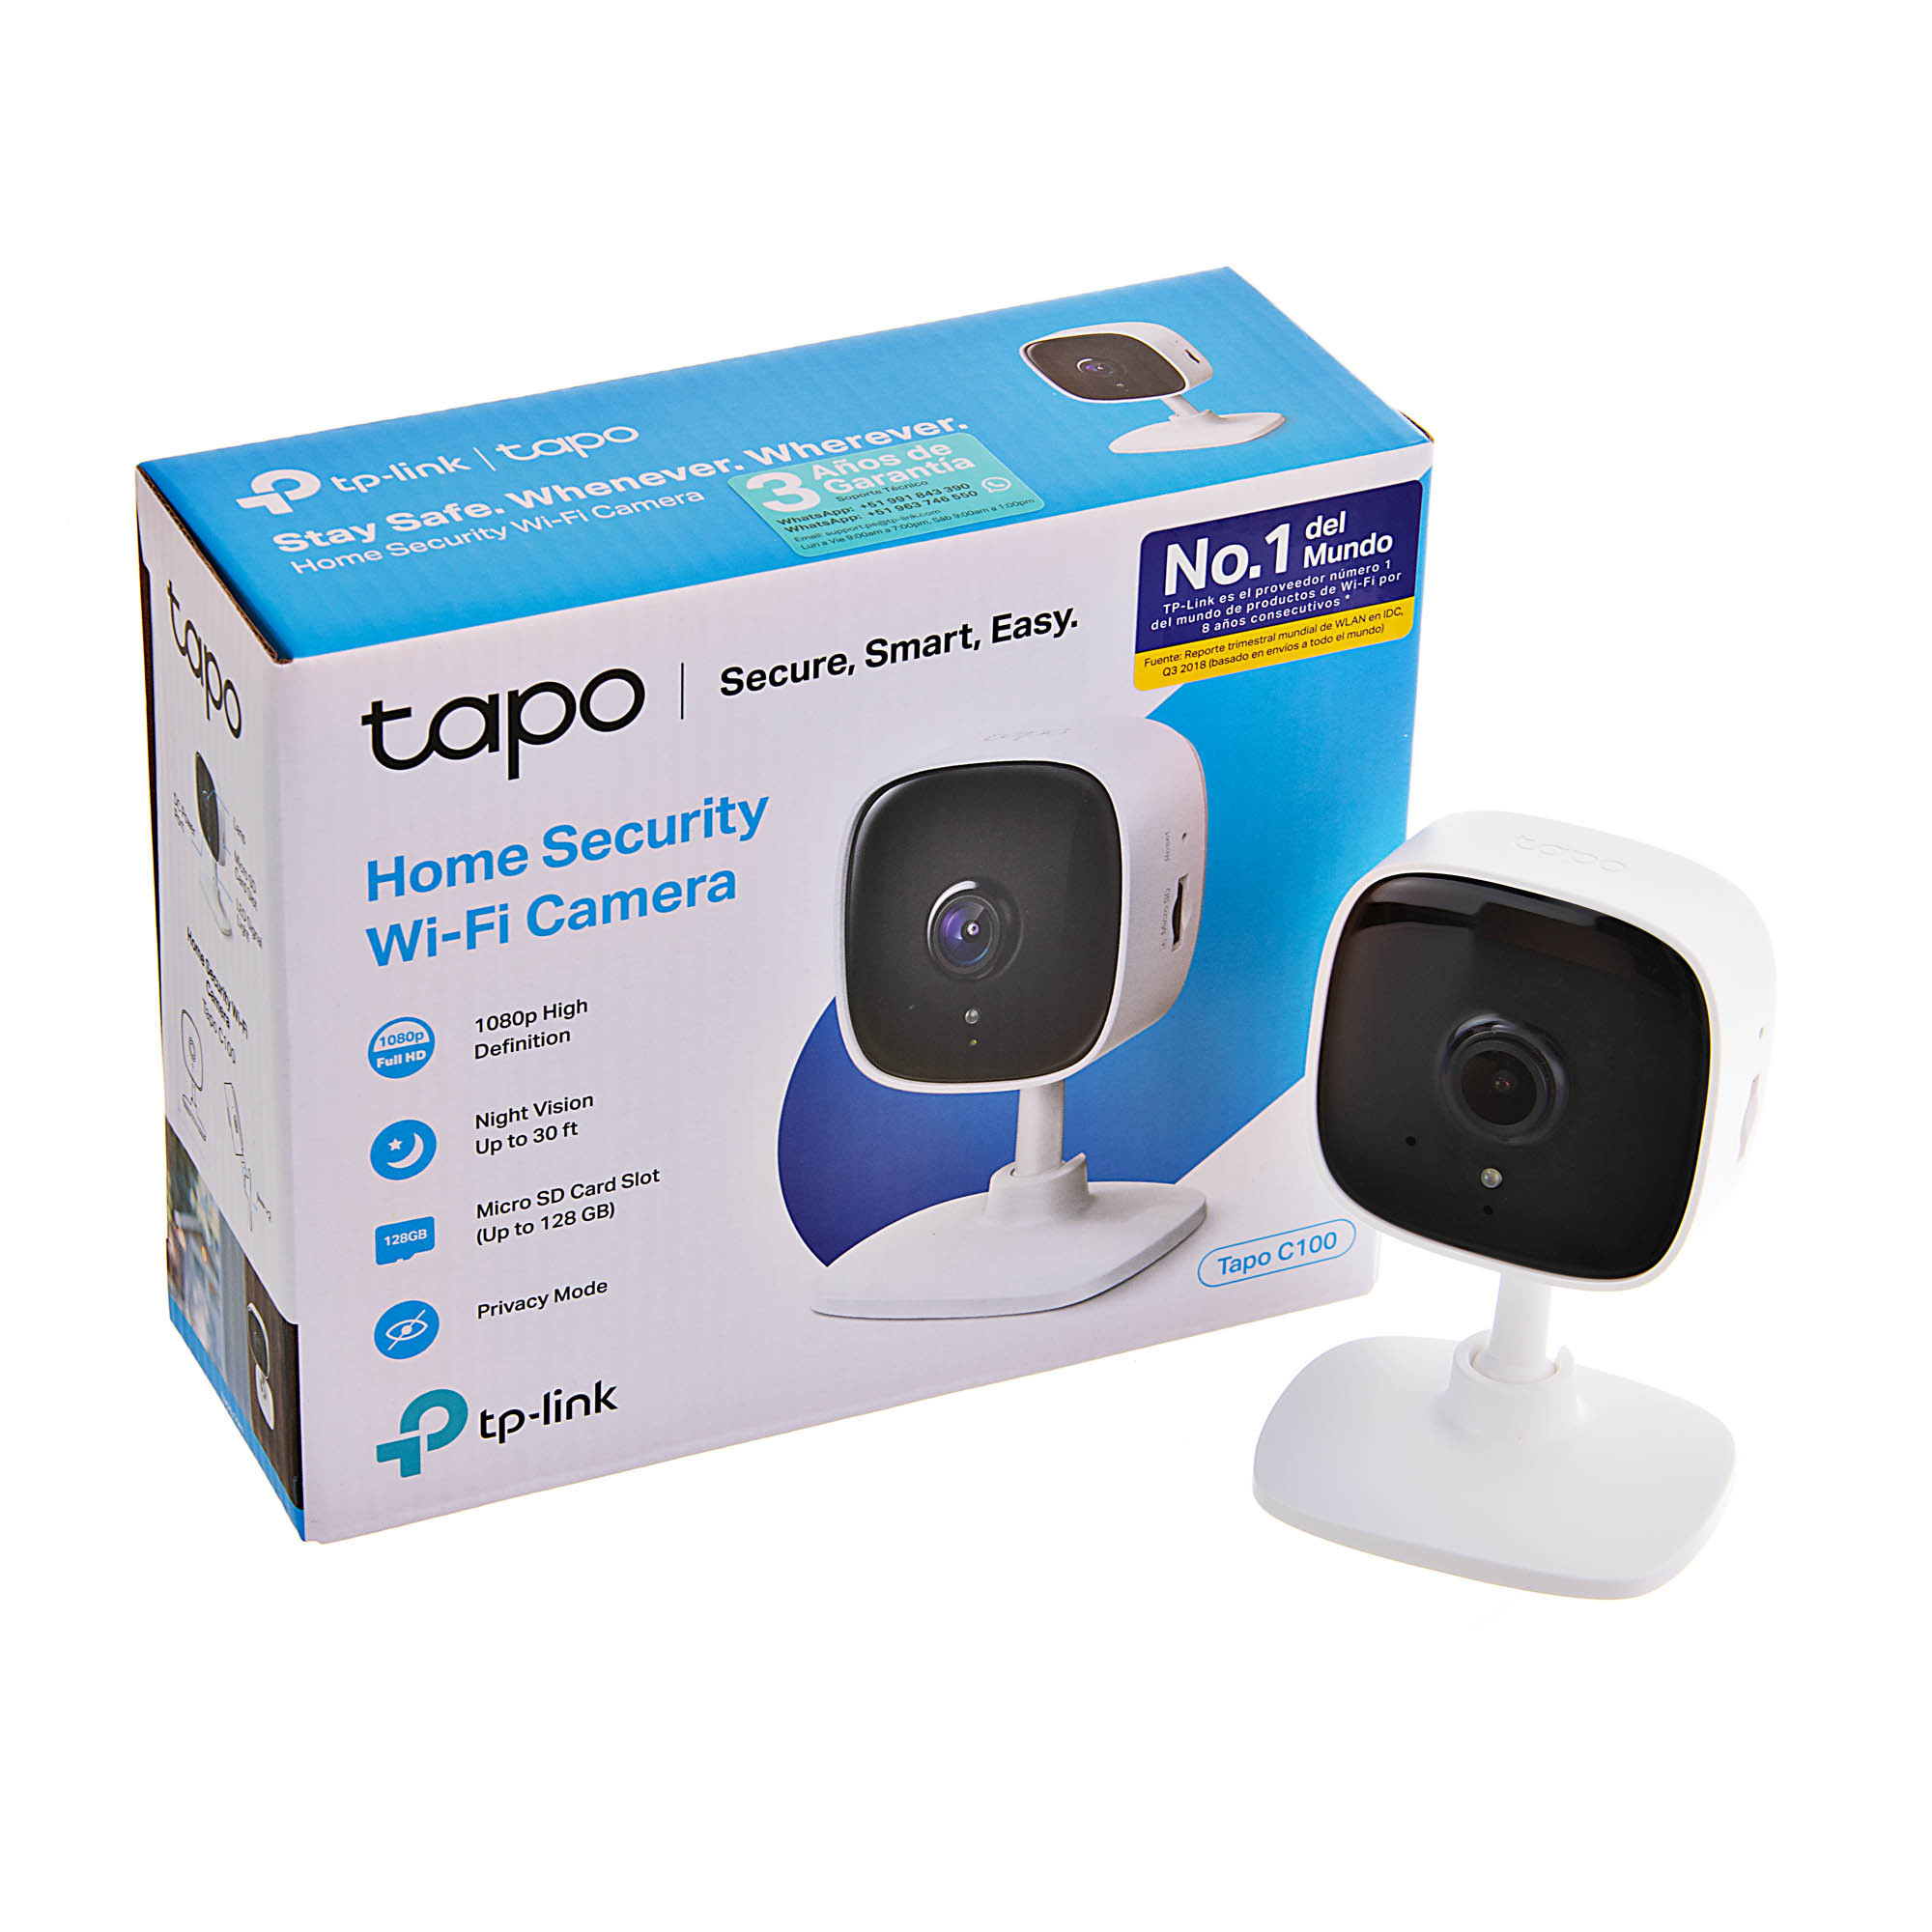 Cámara Wi-Fi de Seguridad para Casa Tapo C100 TP-Link